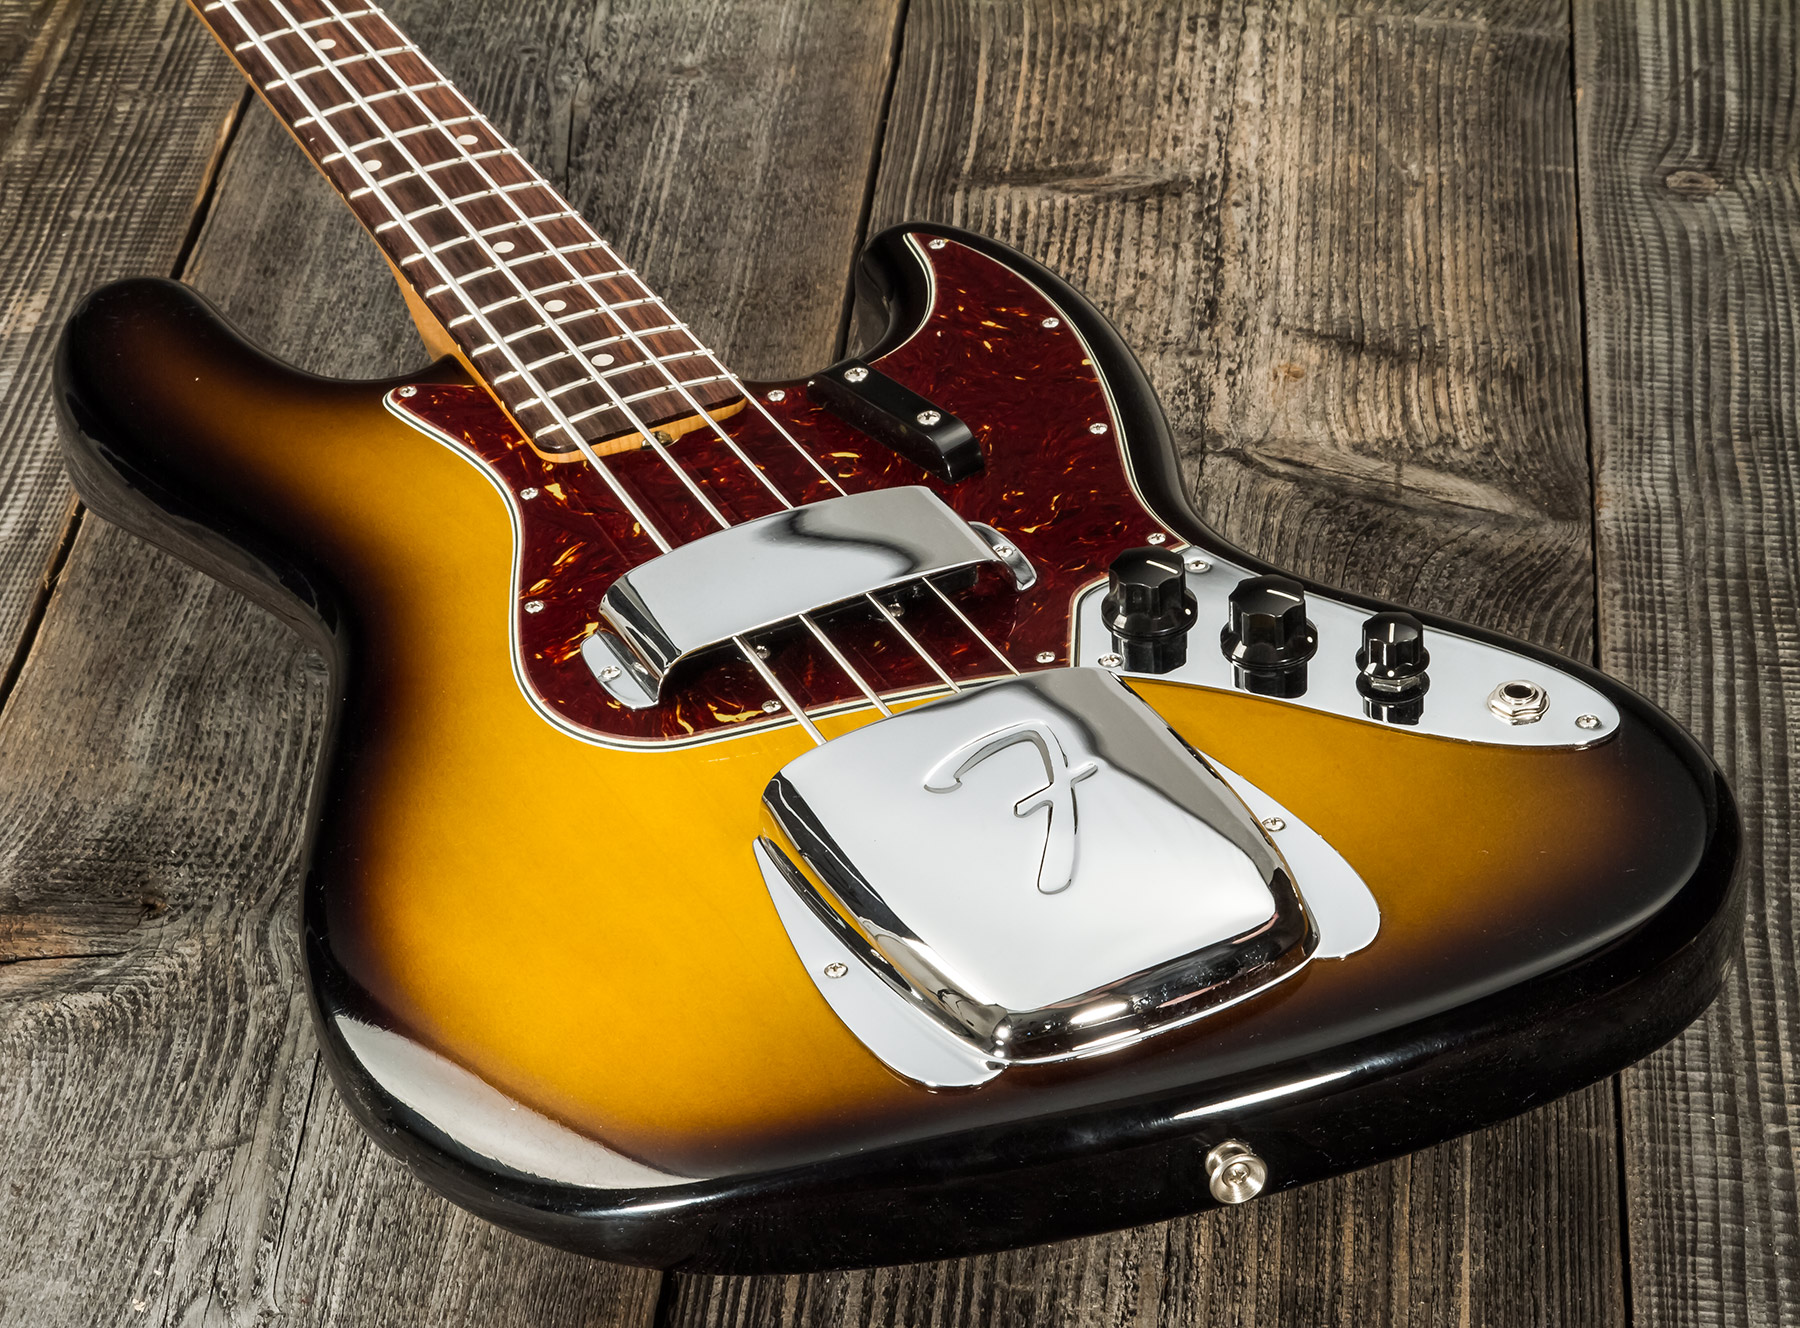 Fender Custom Shop Jazz Bass 1964 Rw #r126513 - Closet Classic 2-color Sunburst - Solidbody E-bass - Variation 3